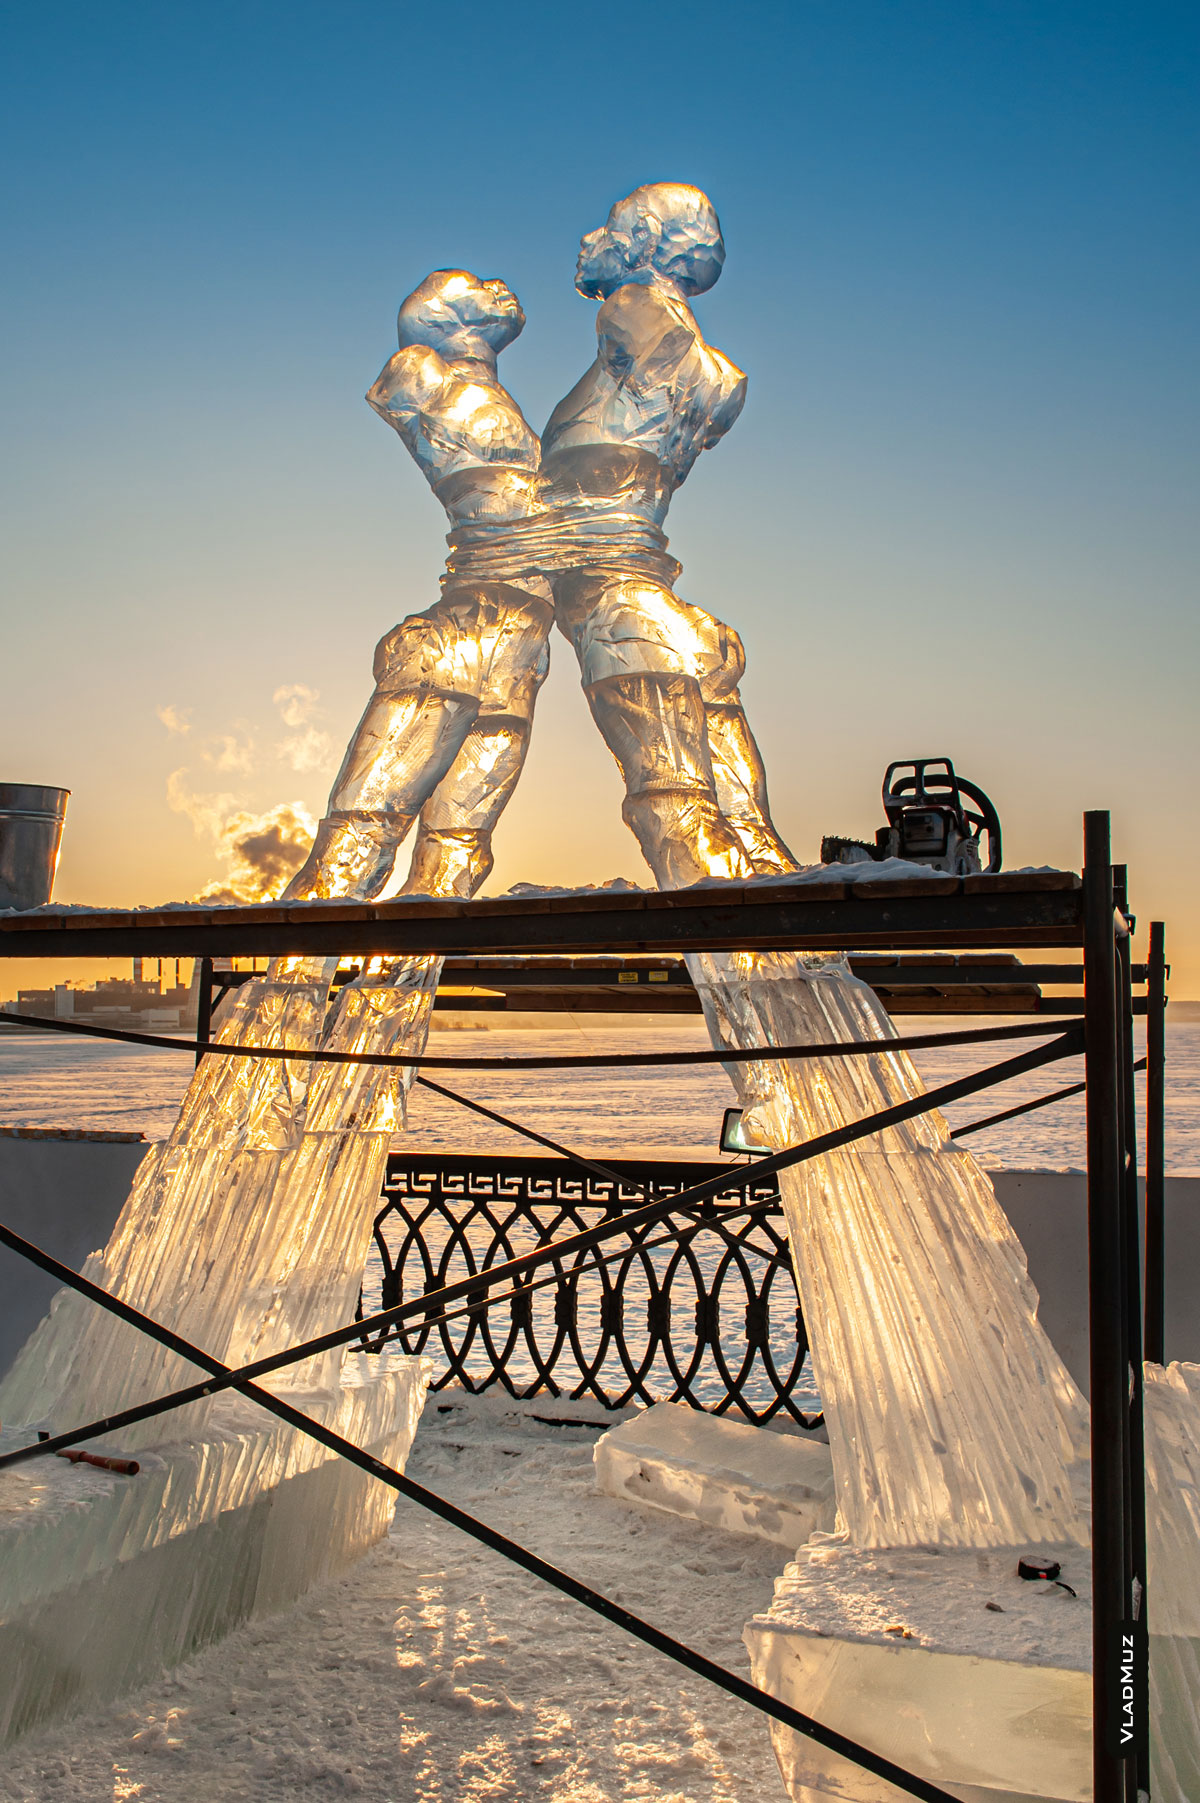 Ижевск, фестиваль «Удмуртский лед»: фото процесса создания ледовой скульптуры «Любовь»